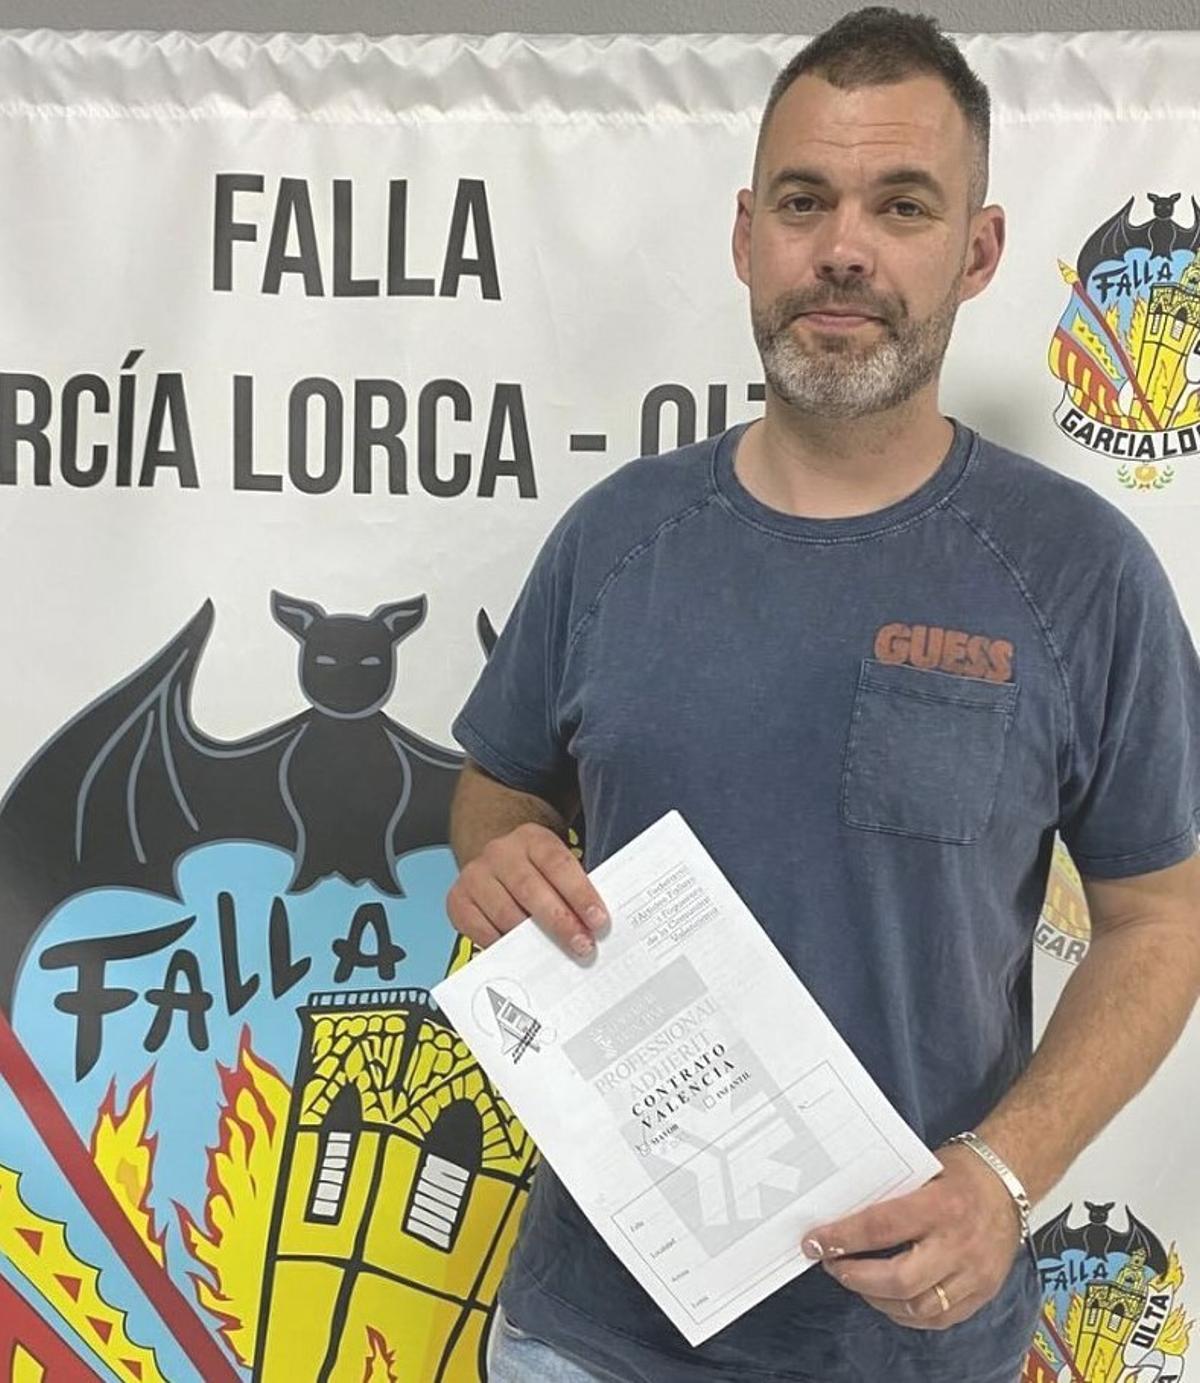 Miguel Banaclocha hará la falla grande de Garcia Lorca-Oltá